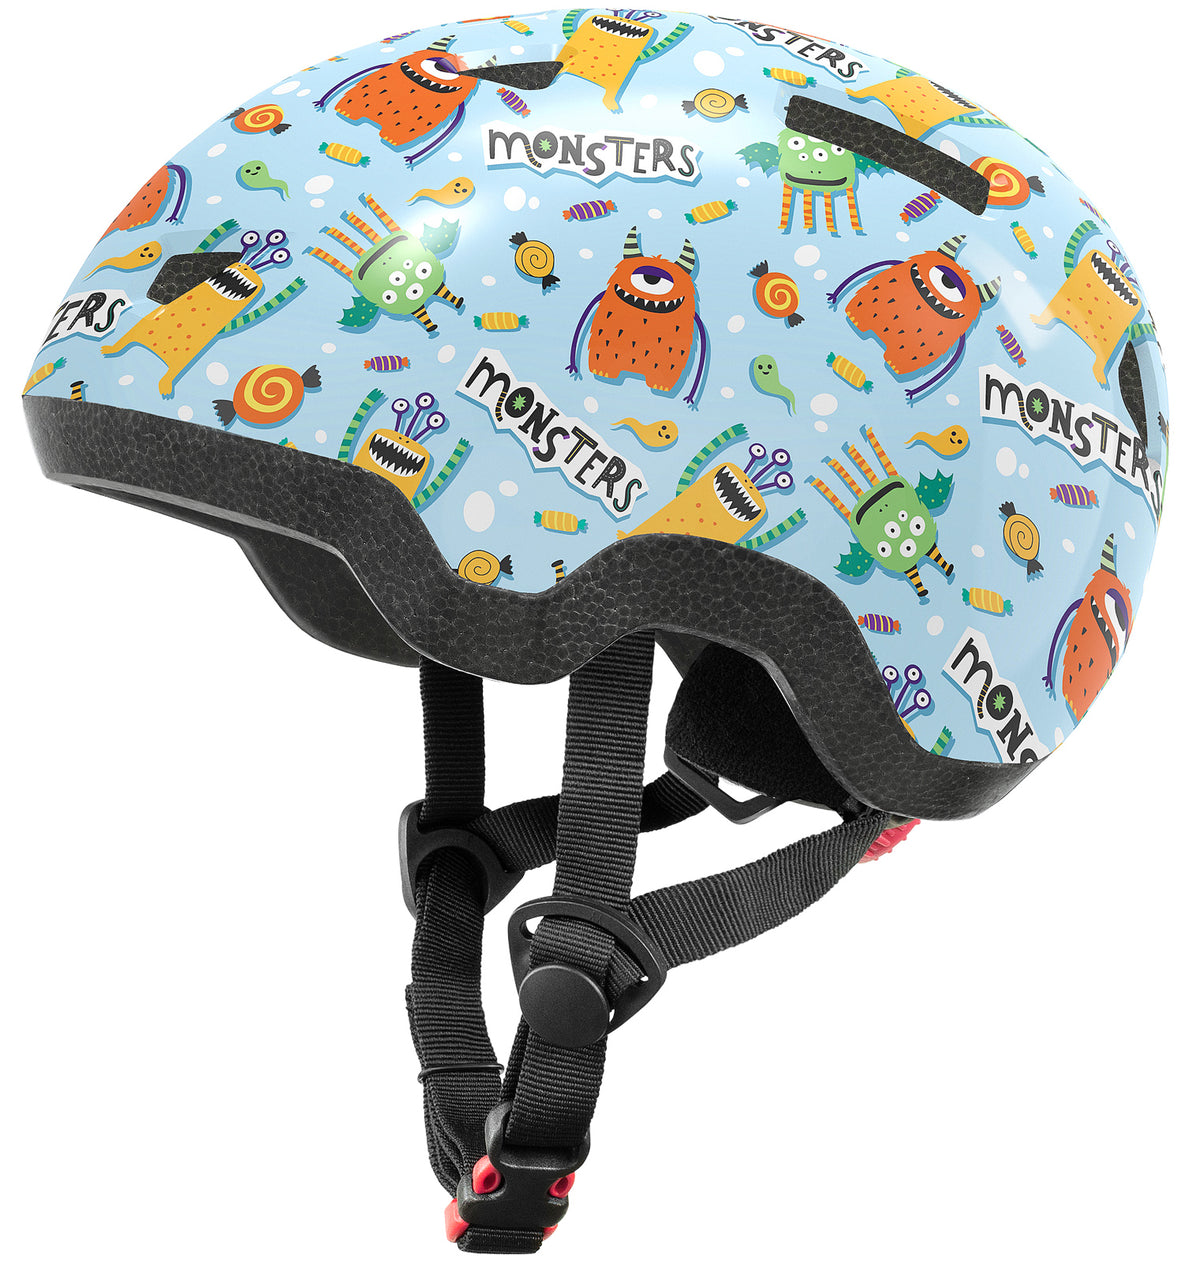 Toddler Bike Helmet, Monster, Blue